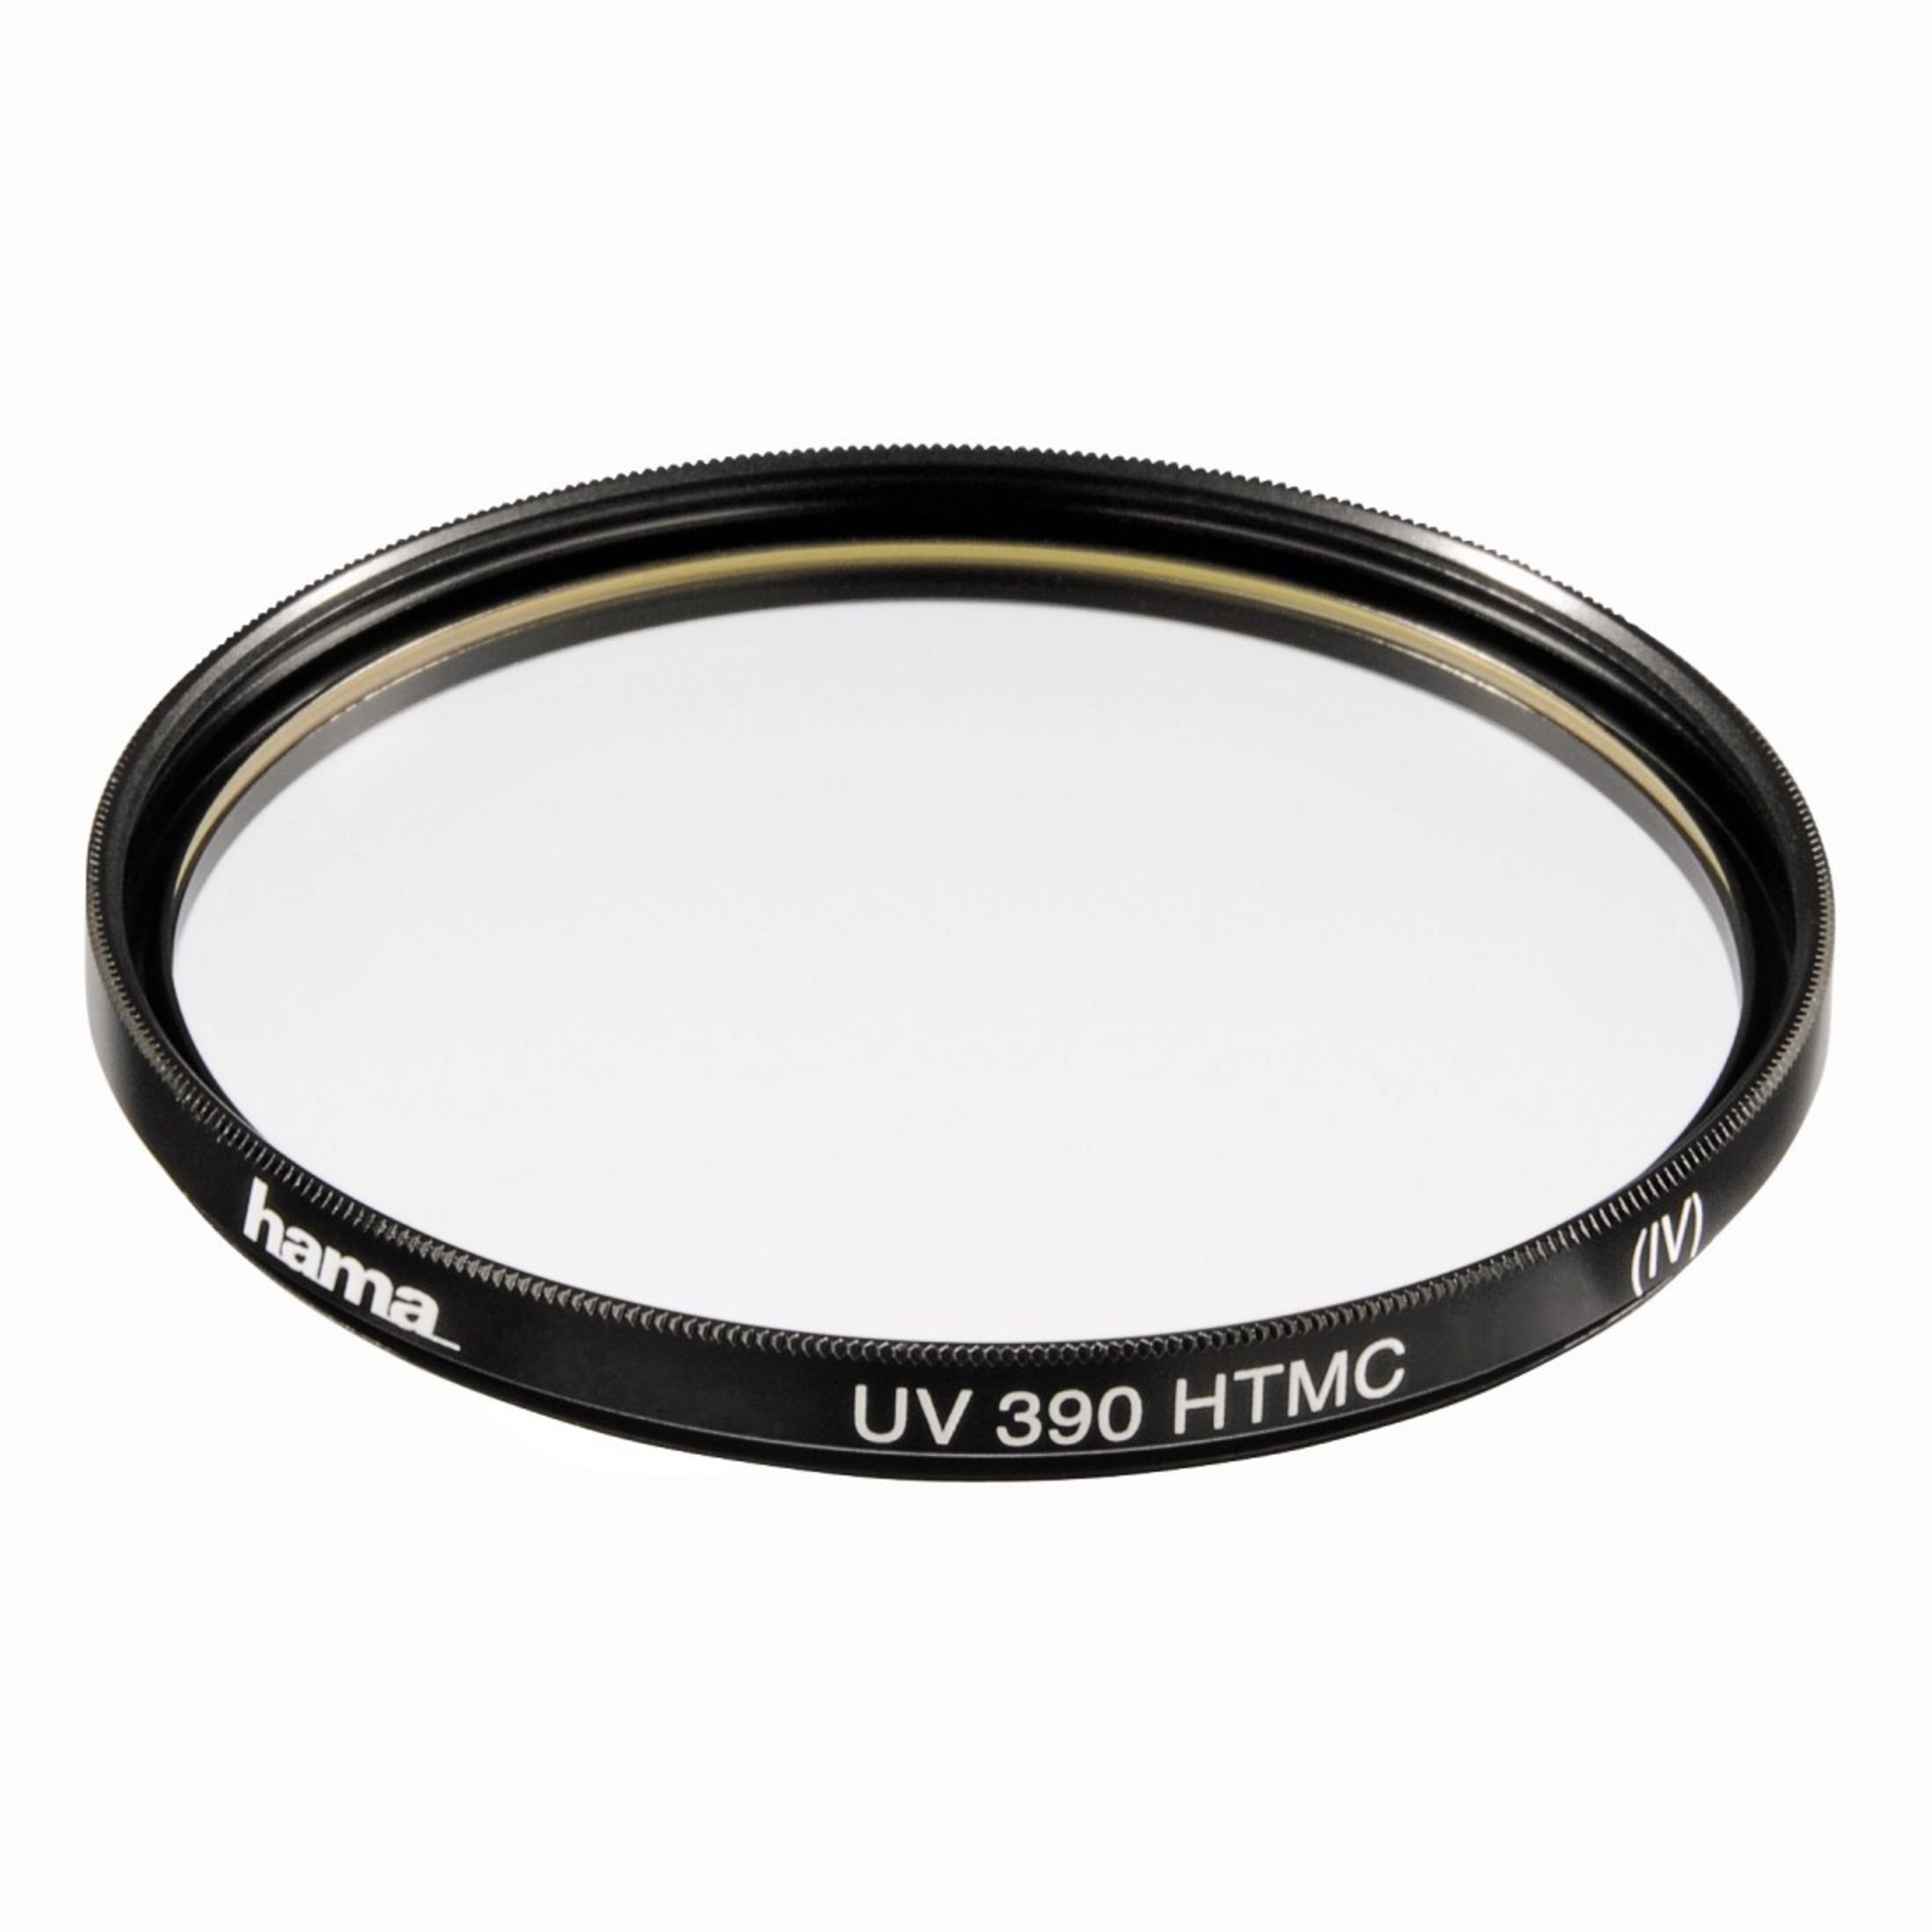 HAMA HTMC:M77 070677 UV-Filter 390/0-HAZE mm 77 UV